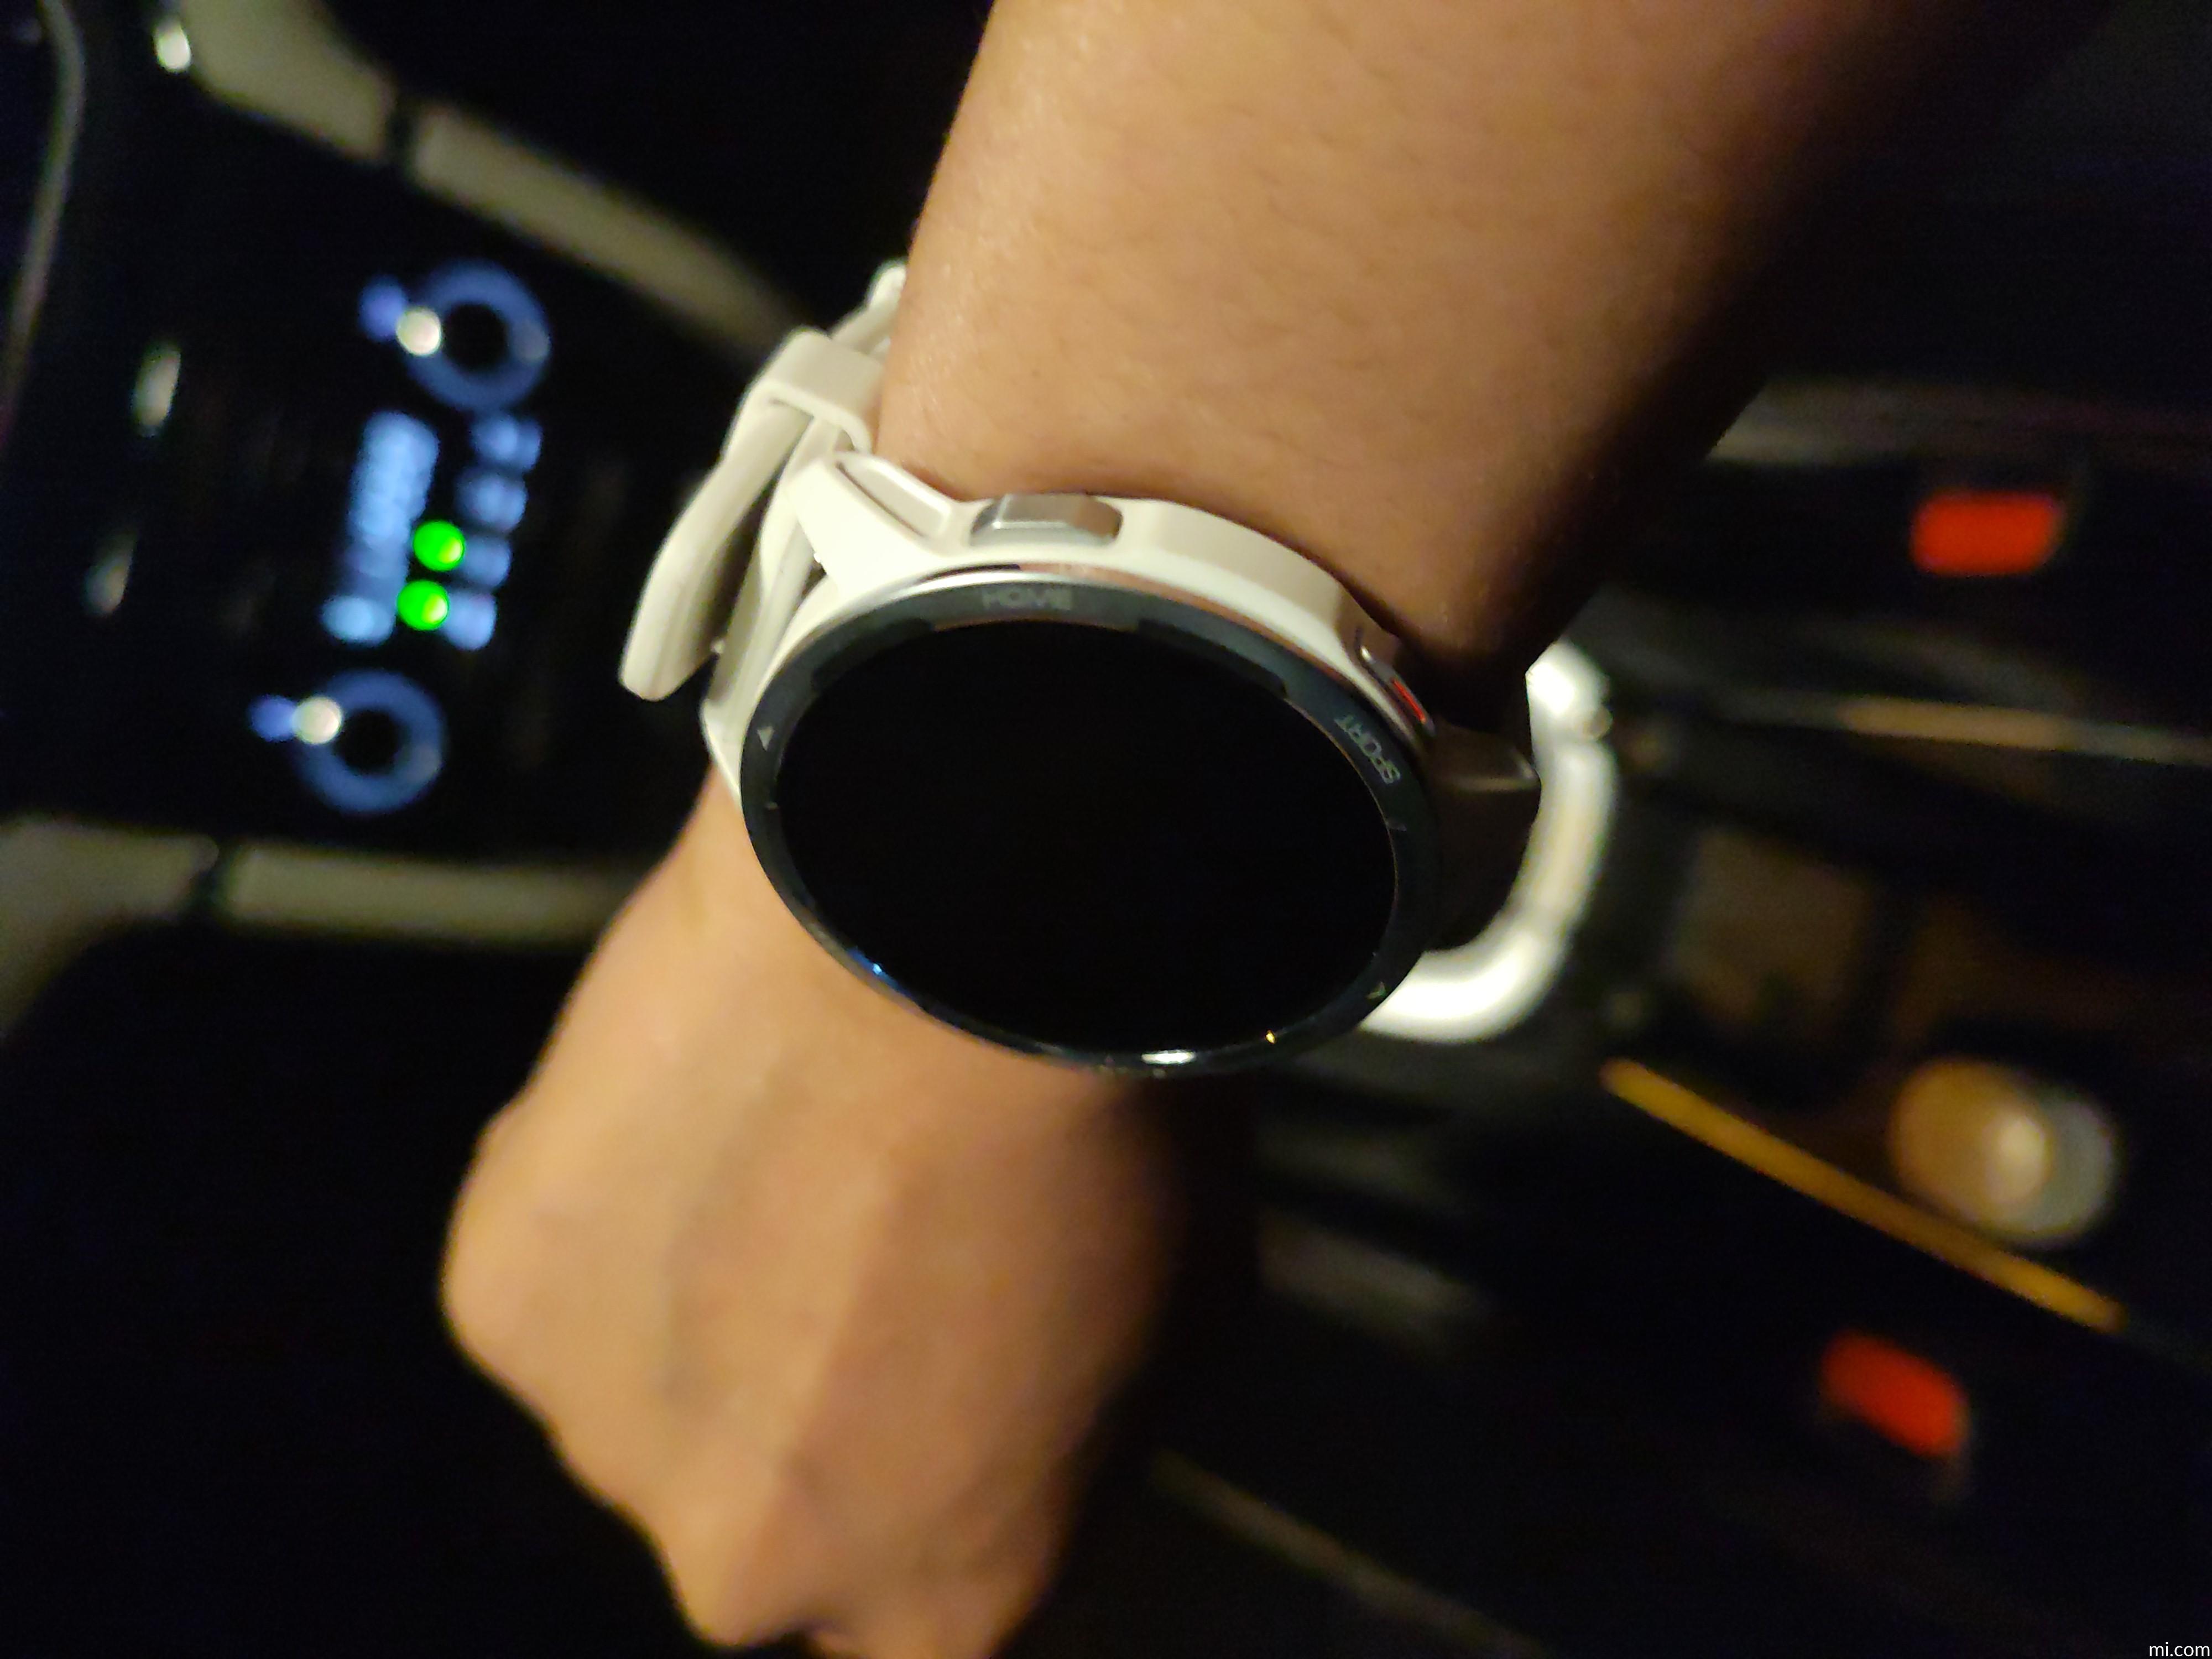 Smartwatch Xiaomi Watch S1 Active Gl Moon Blanco con Ofertas en